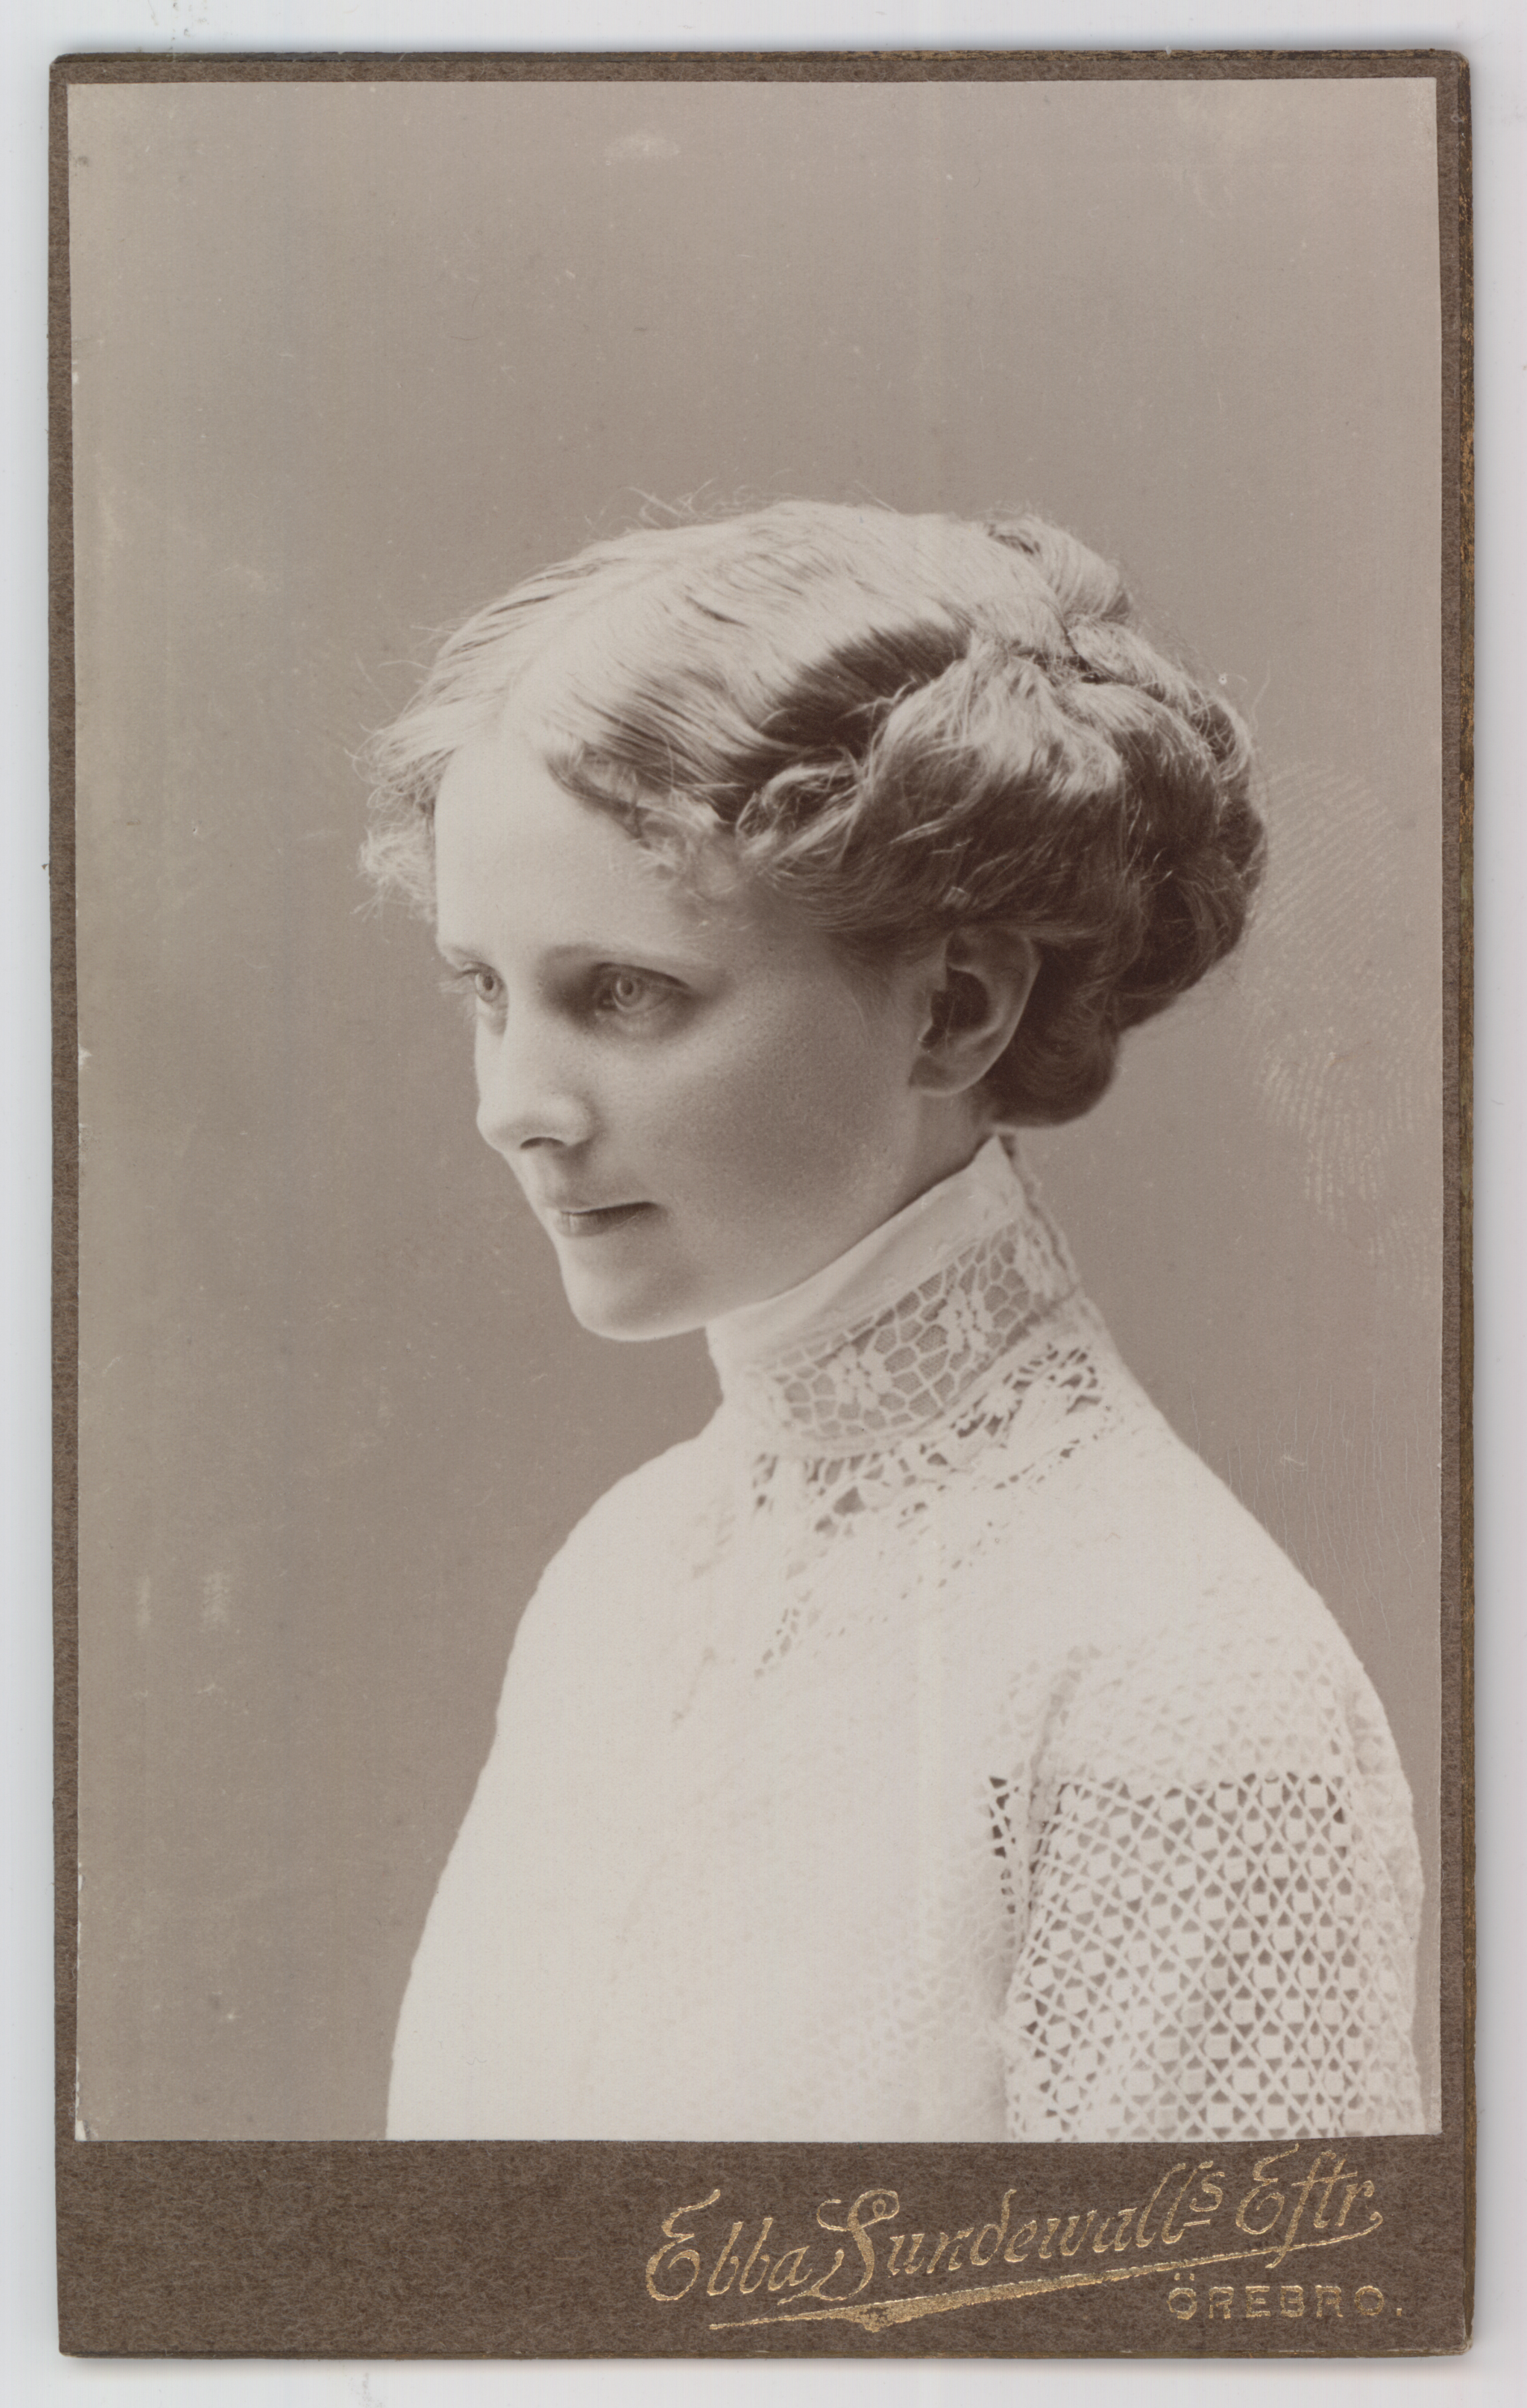 Porträtt av ung kvinna.